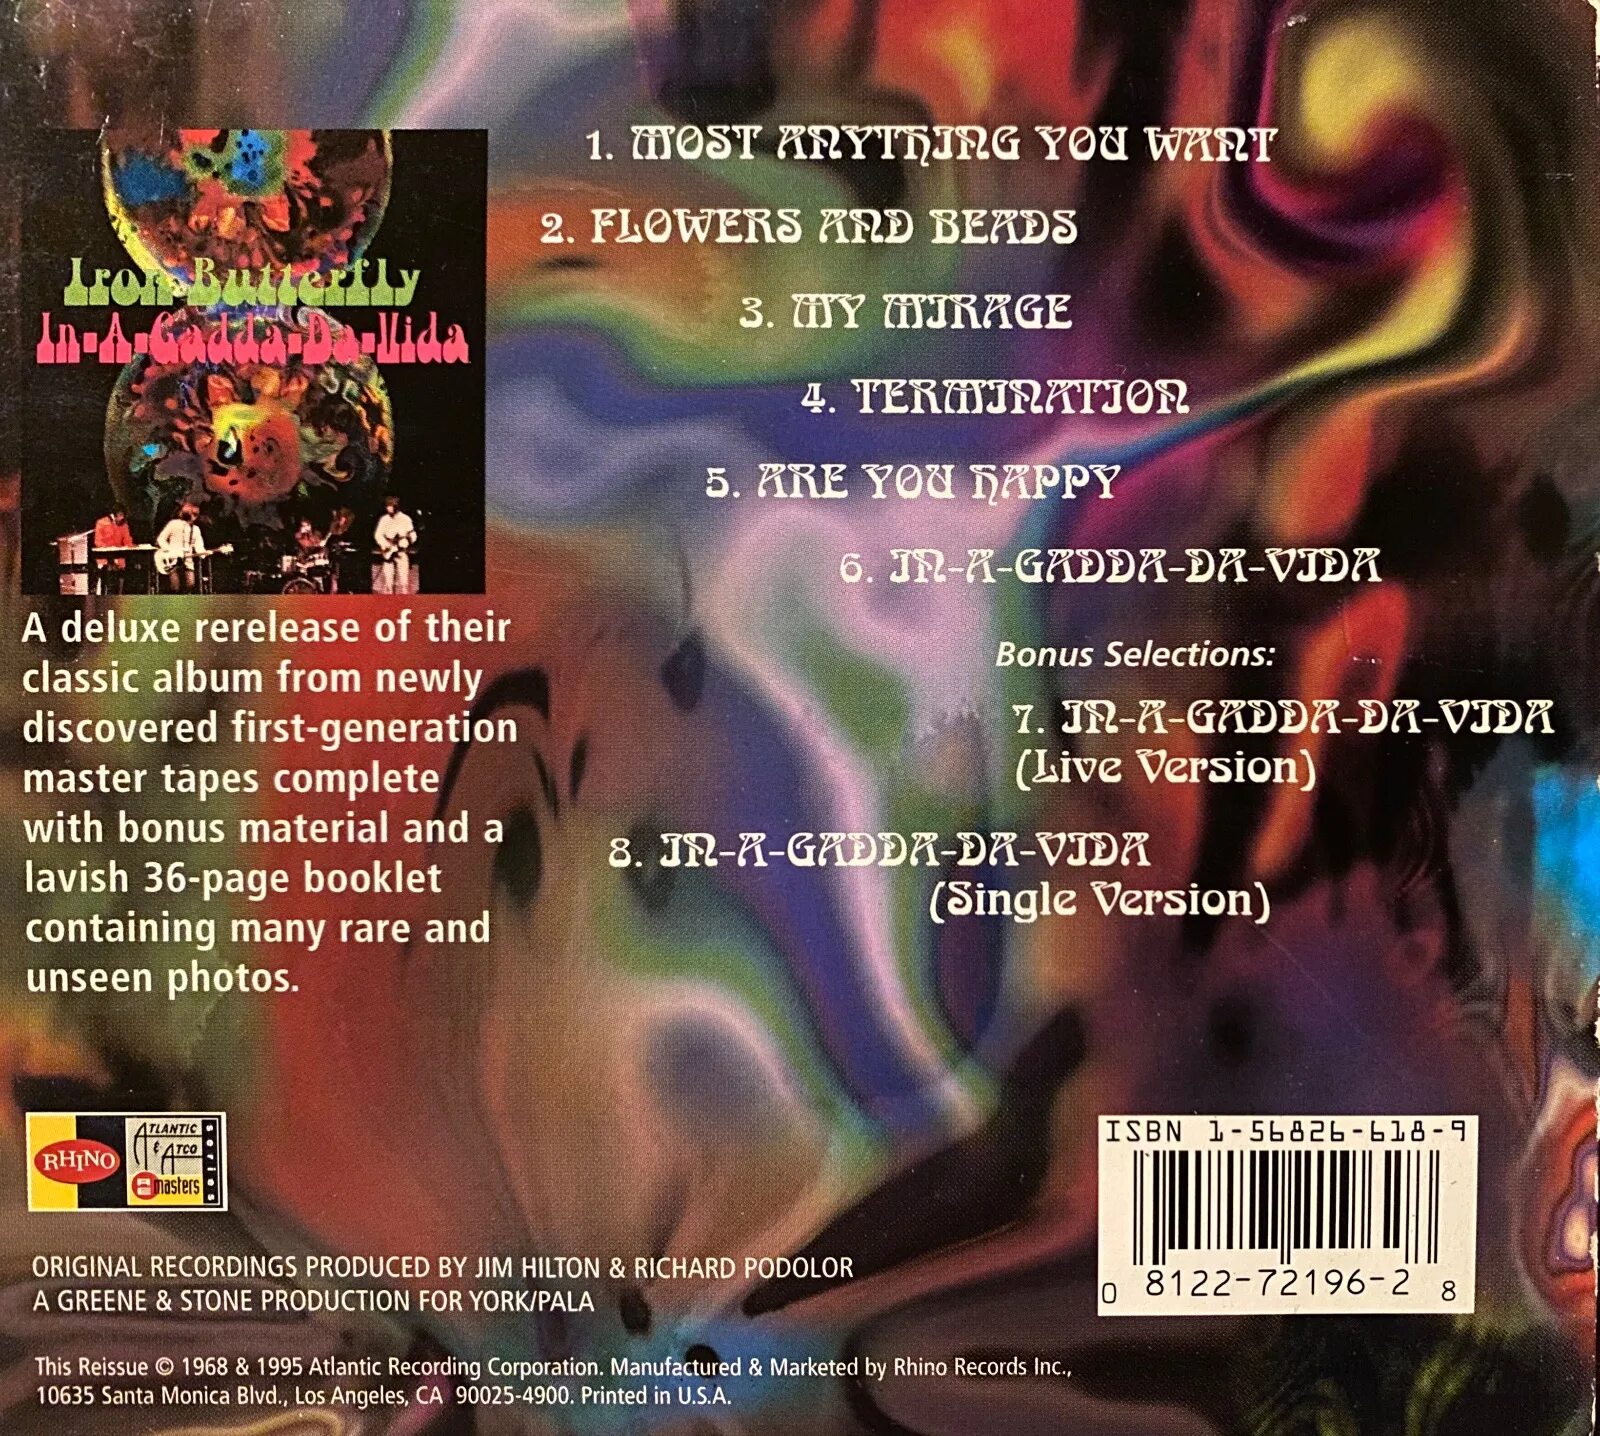 In a gadda da vida. Iron Butterfly in-a-Gadda-da-vida 1968. Iron Butterfly in-a-Gadda-da-vida обложка. Обложка для mp3 файлов 050. Iron Butterfly - in-a-Gadda-da-vida. Iron Butterfly_in-a-Gadda-da-vida [1968] album Cover.